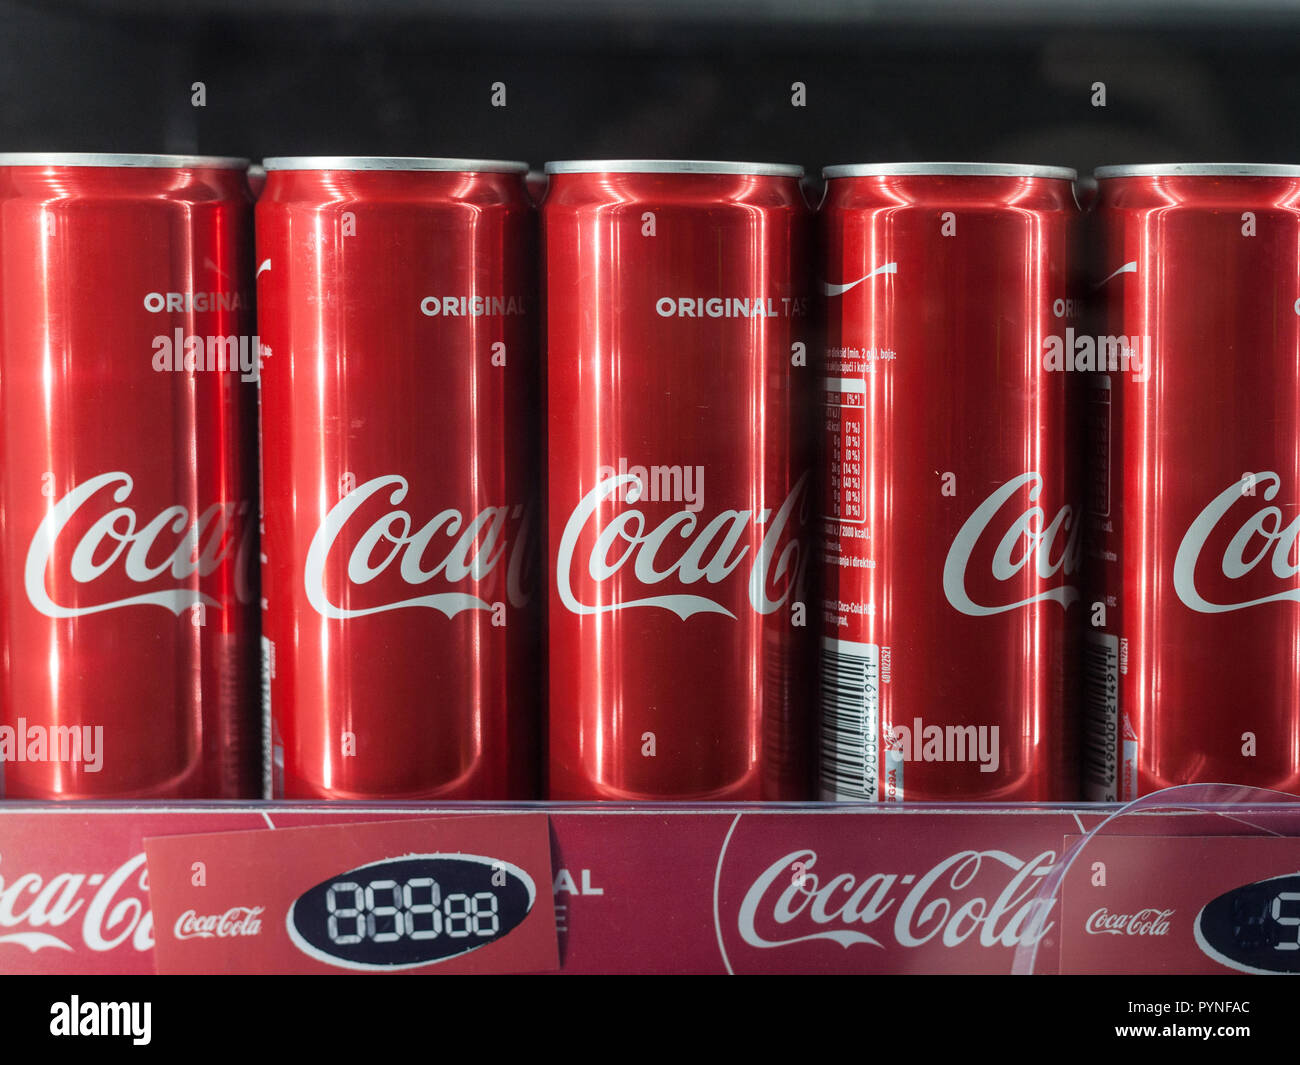 BELGRADE, SERBIE - 28 octobre 2018 : le logo Coca Cola sur les boîtes alignées sur l'étagère d'un réfrigérateur. Coca Cola est une marque de soda cola, le plus vendu dans la Banque D'Images